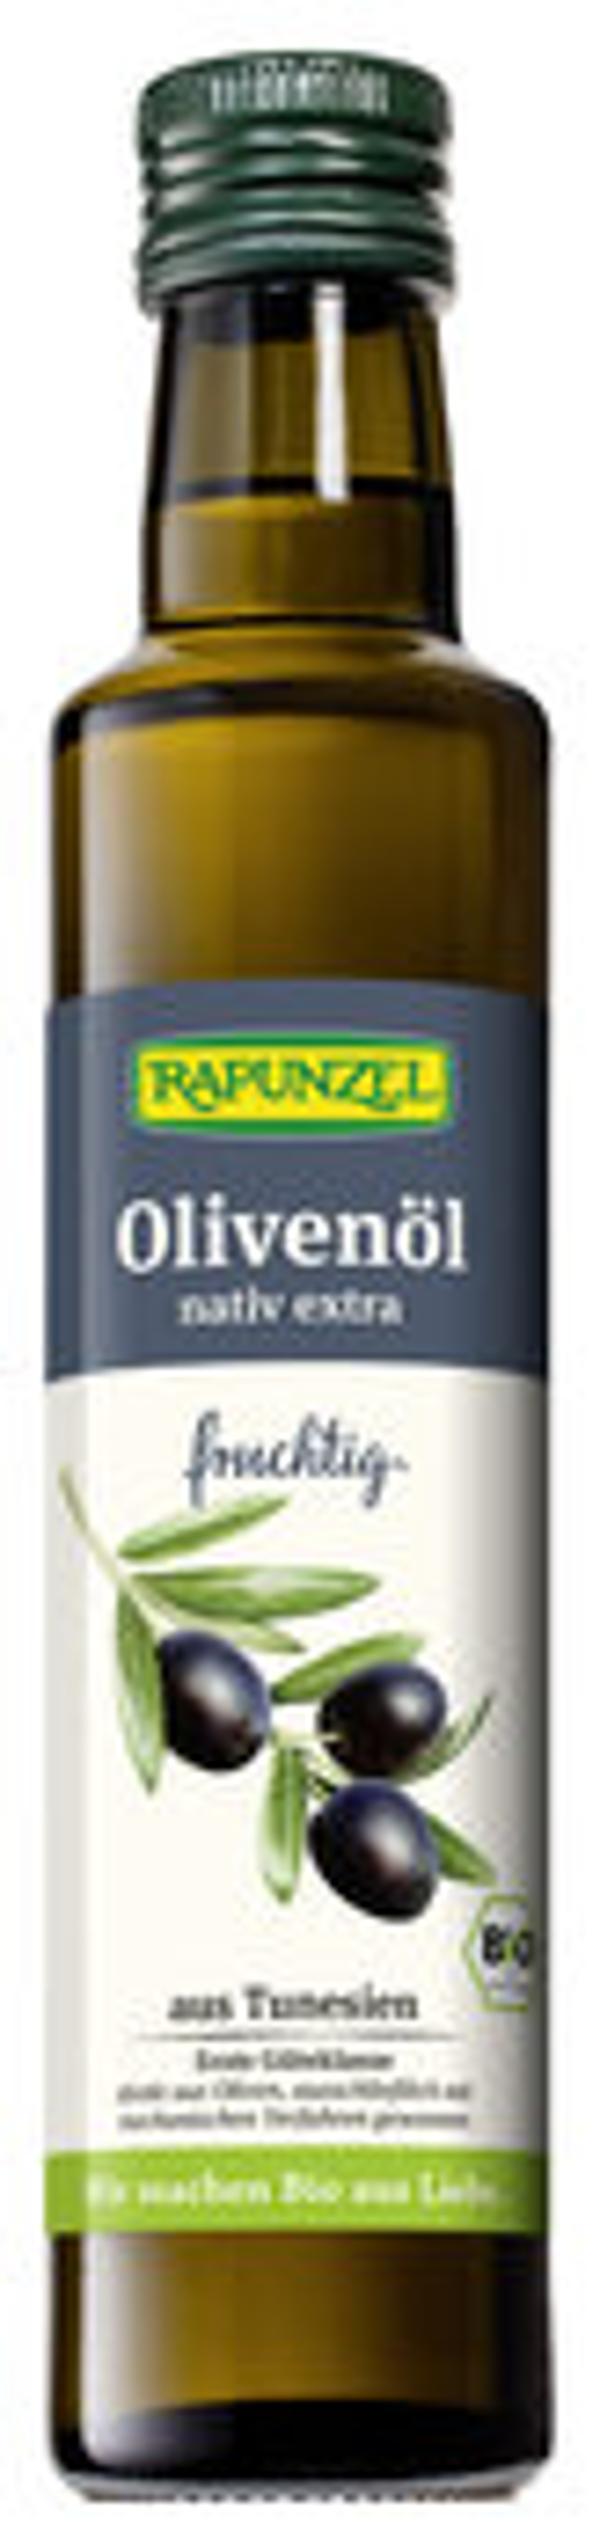 Produktfoto zu Olivenöl fruchtig, 250 ml